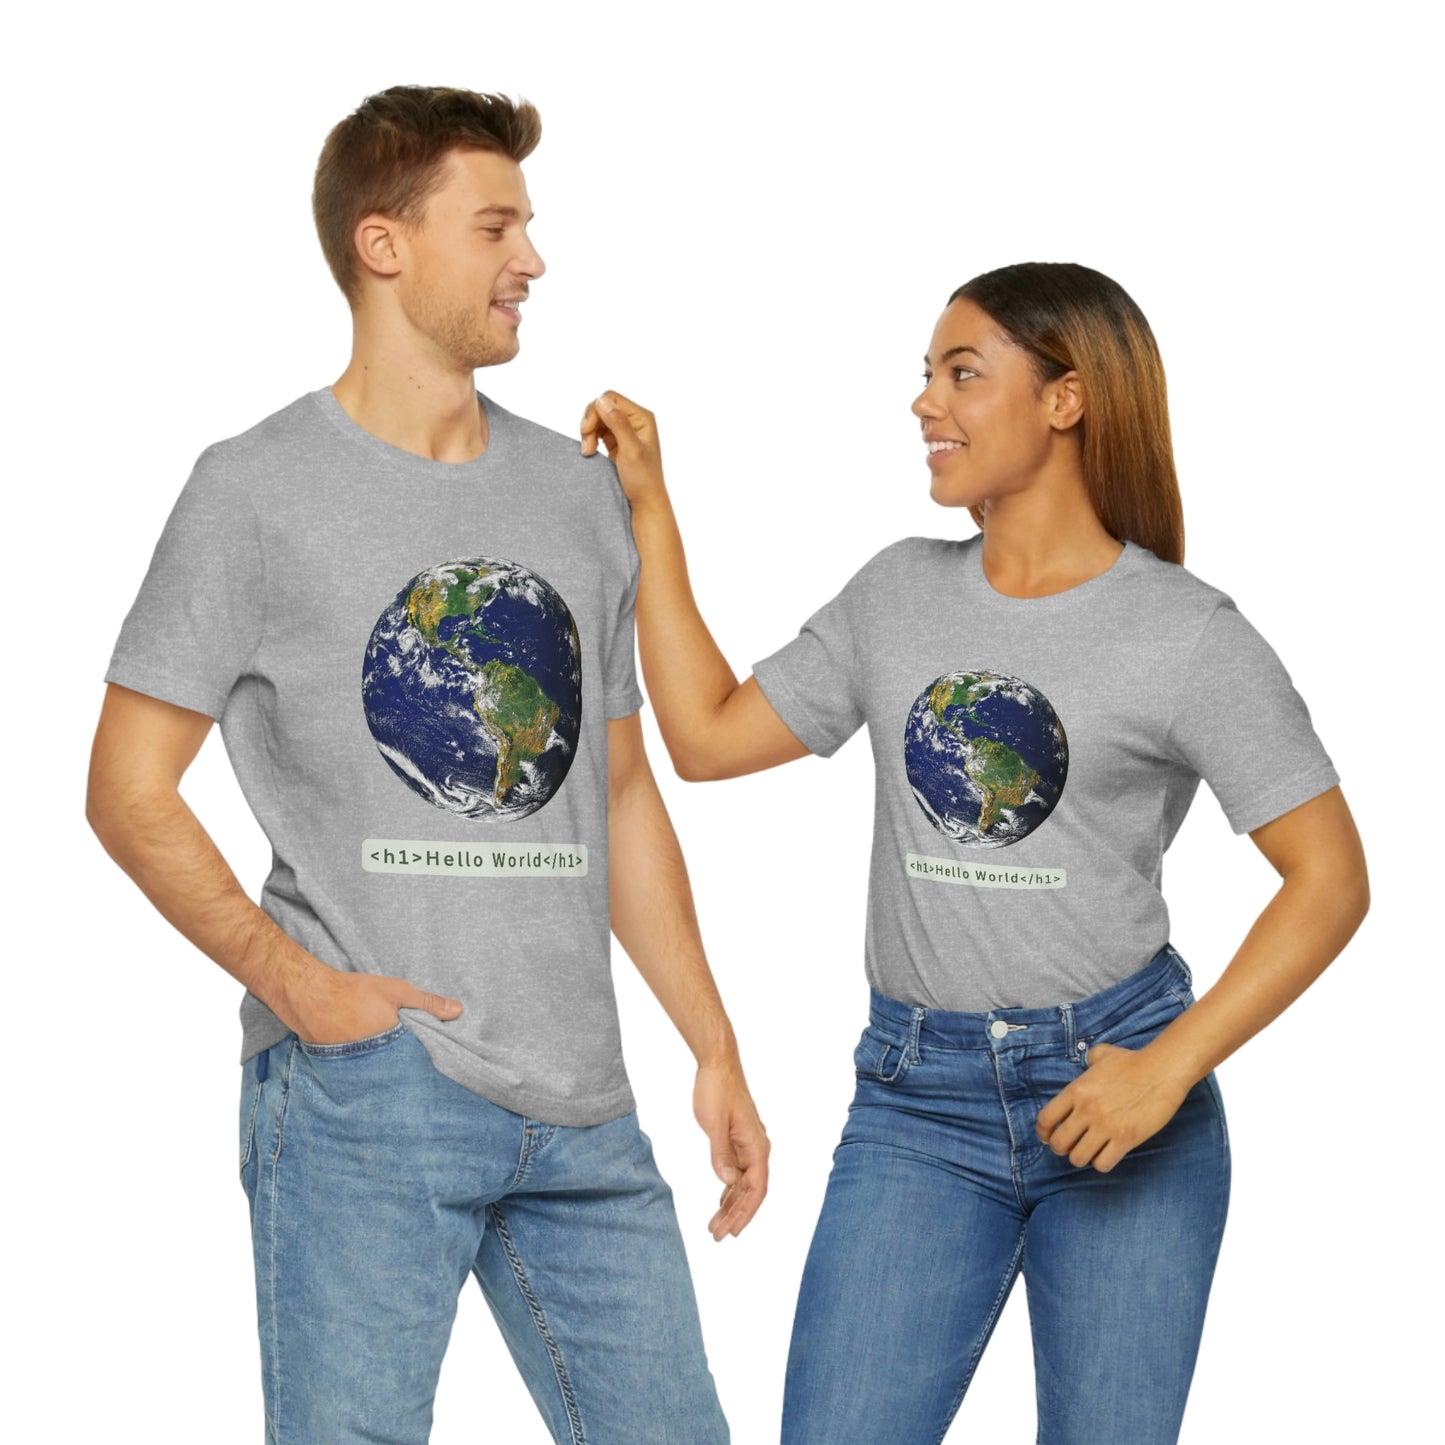 Hello World! HTML T-shirt (Unisex, Adult Sizes)